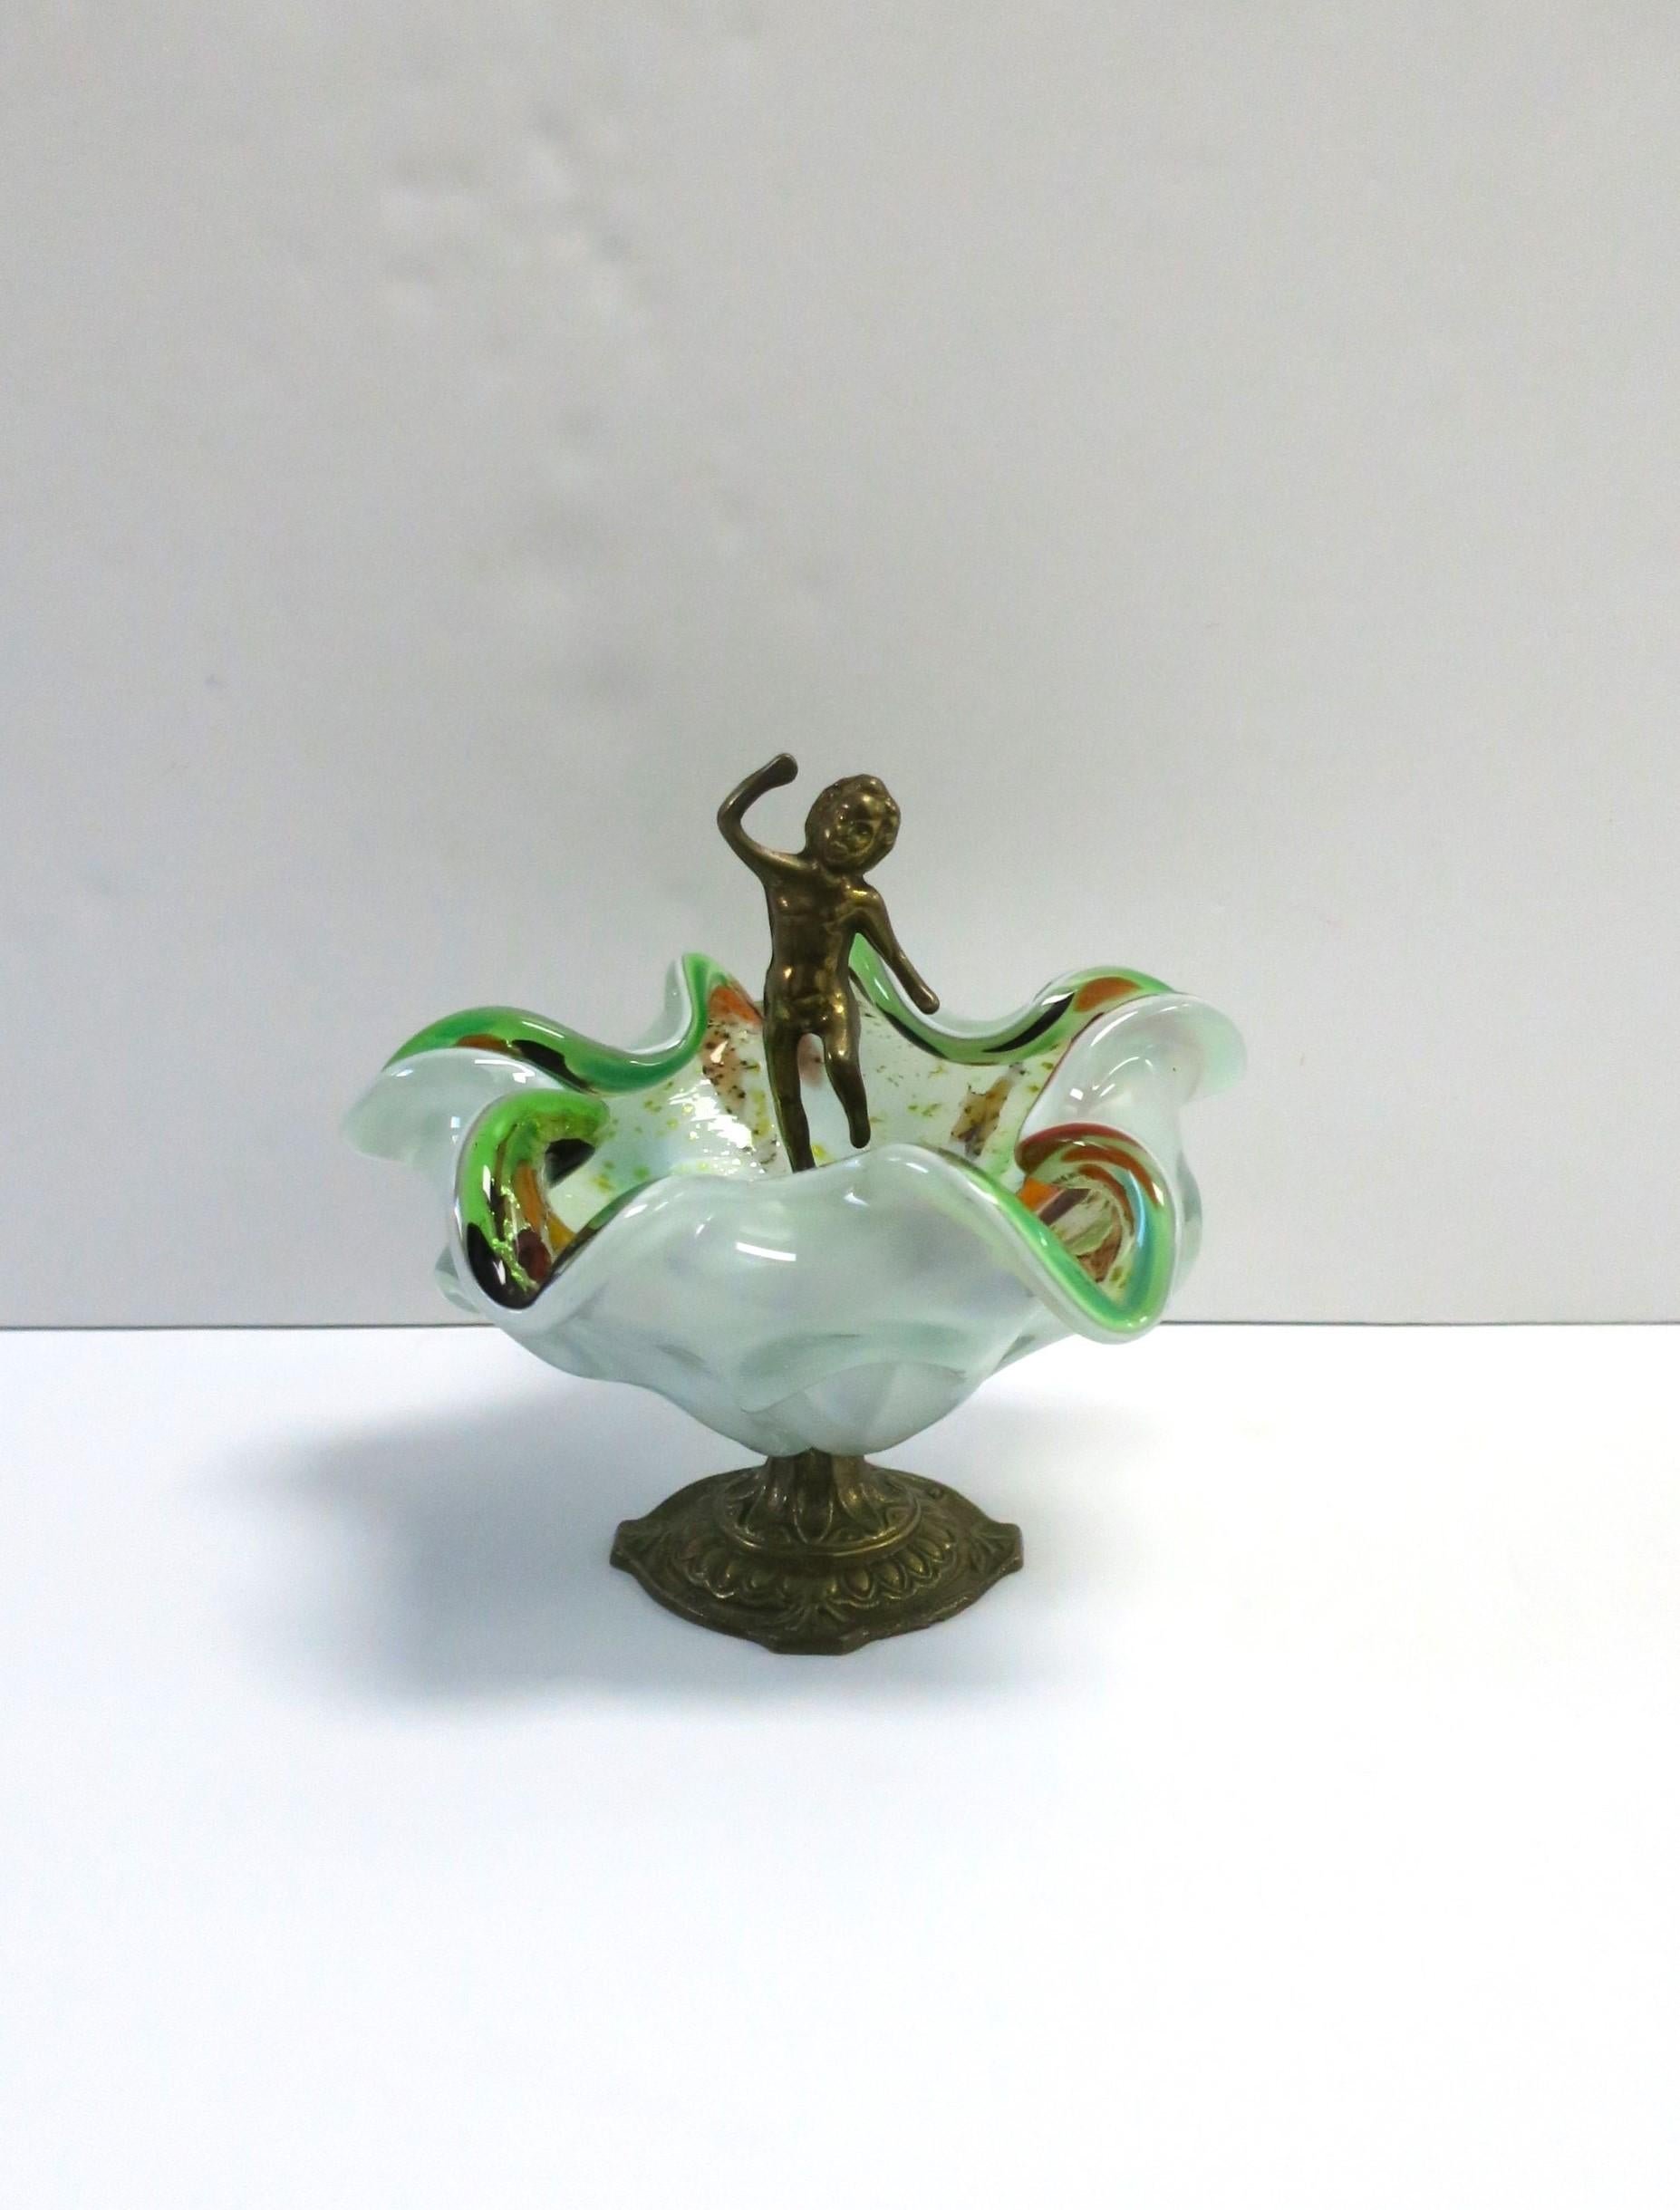 Italienische Murano-Glasschale mit männlichem Akt aus Messing, ca. Mitte des 20. Jahrhunderts, Italien. Diese Murano-Schale hat einen gewellten, weichen Rand mit leuchtenden Grün- und Orangetönen, einem Hauch von Gold, Braun und hellblauen